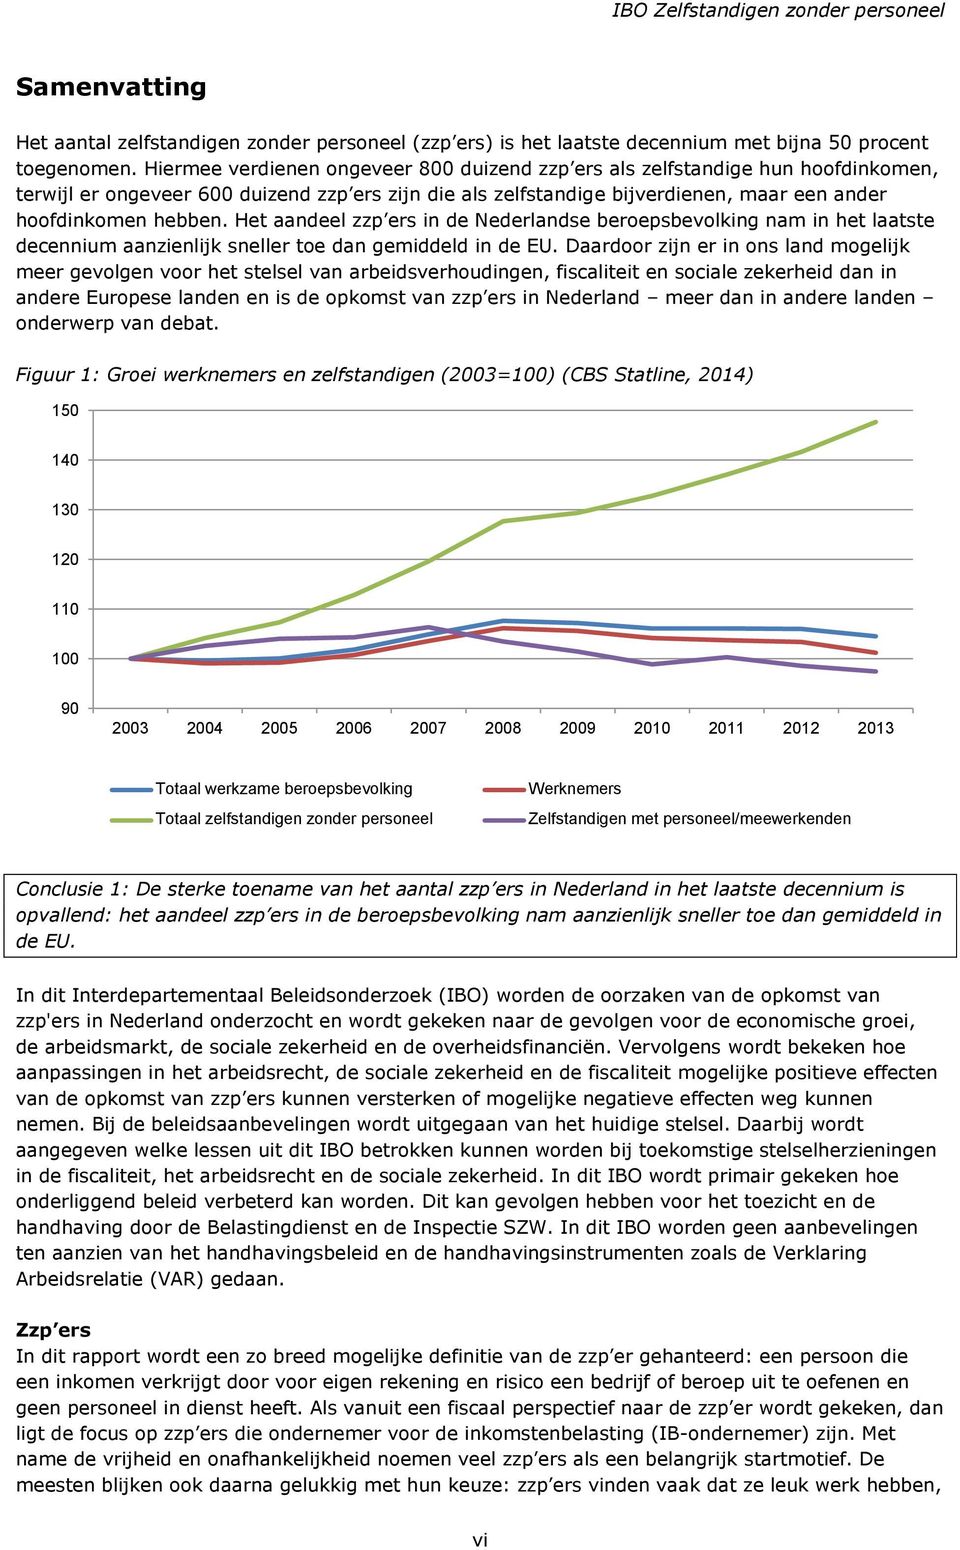 Het aandeel zzp ers in de Nederlandse beroepsbevolking nam in het laatste decennium aanzienlijk sneller toe dan gemiddeld in de EU.